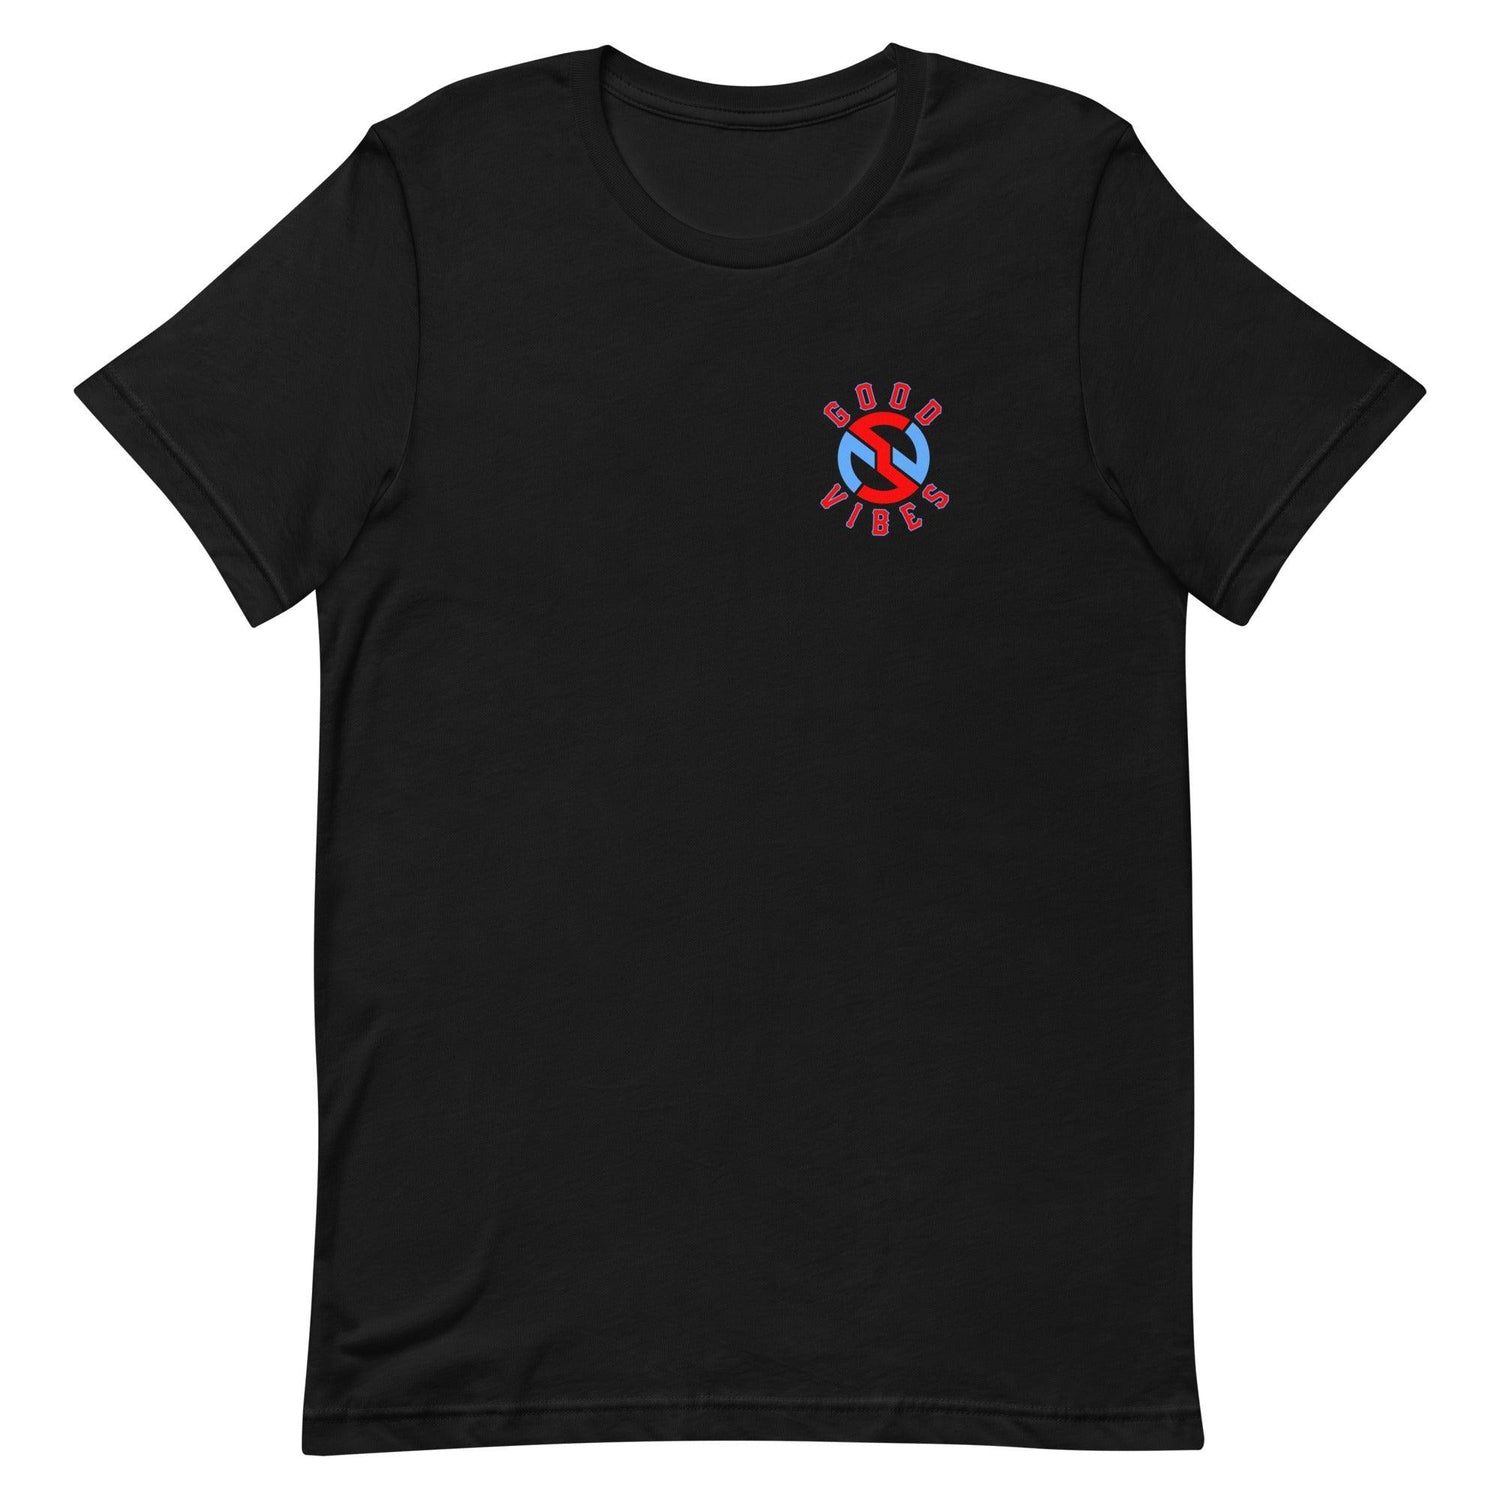 Nick Swiney “Essential” t-shirt - Fan Arch